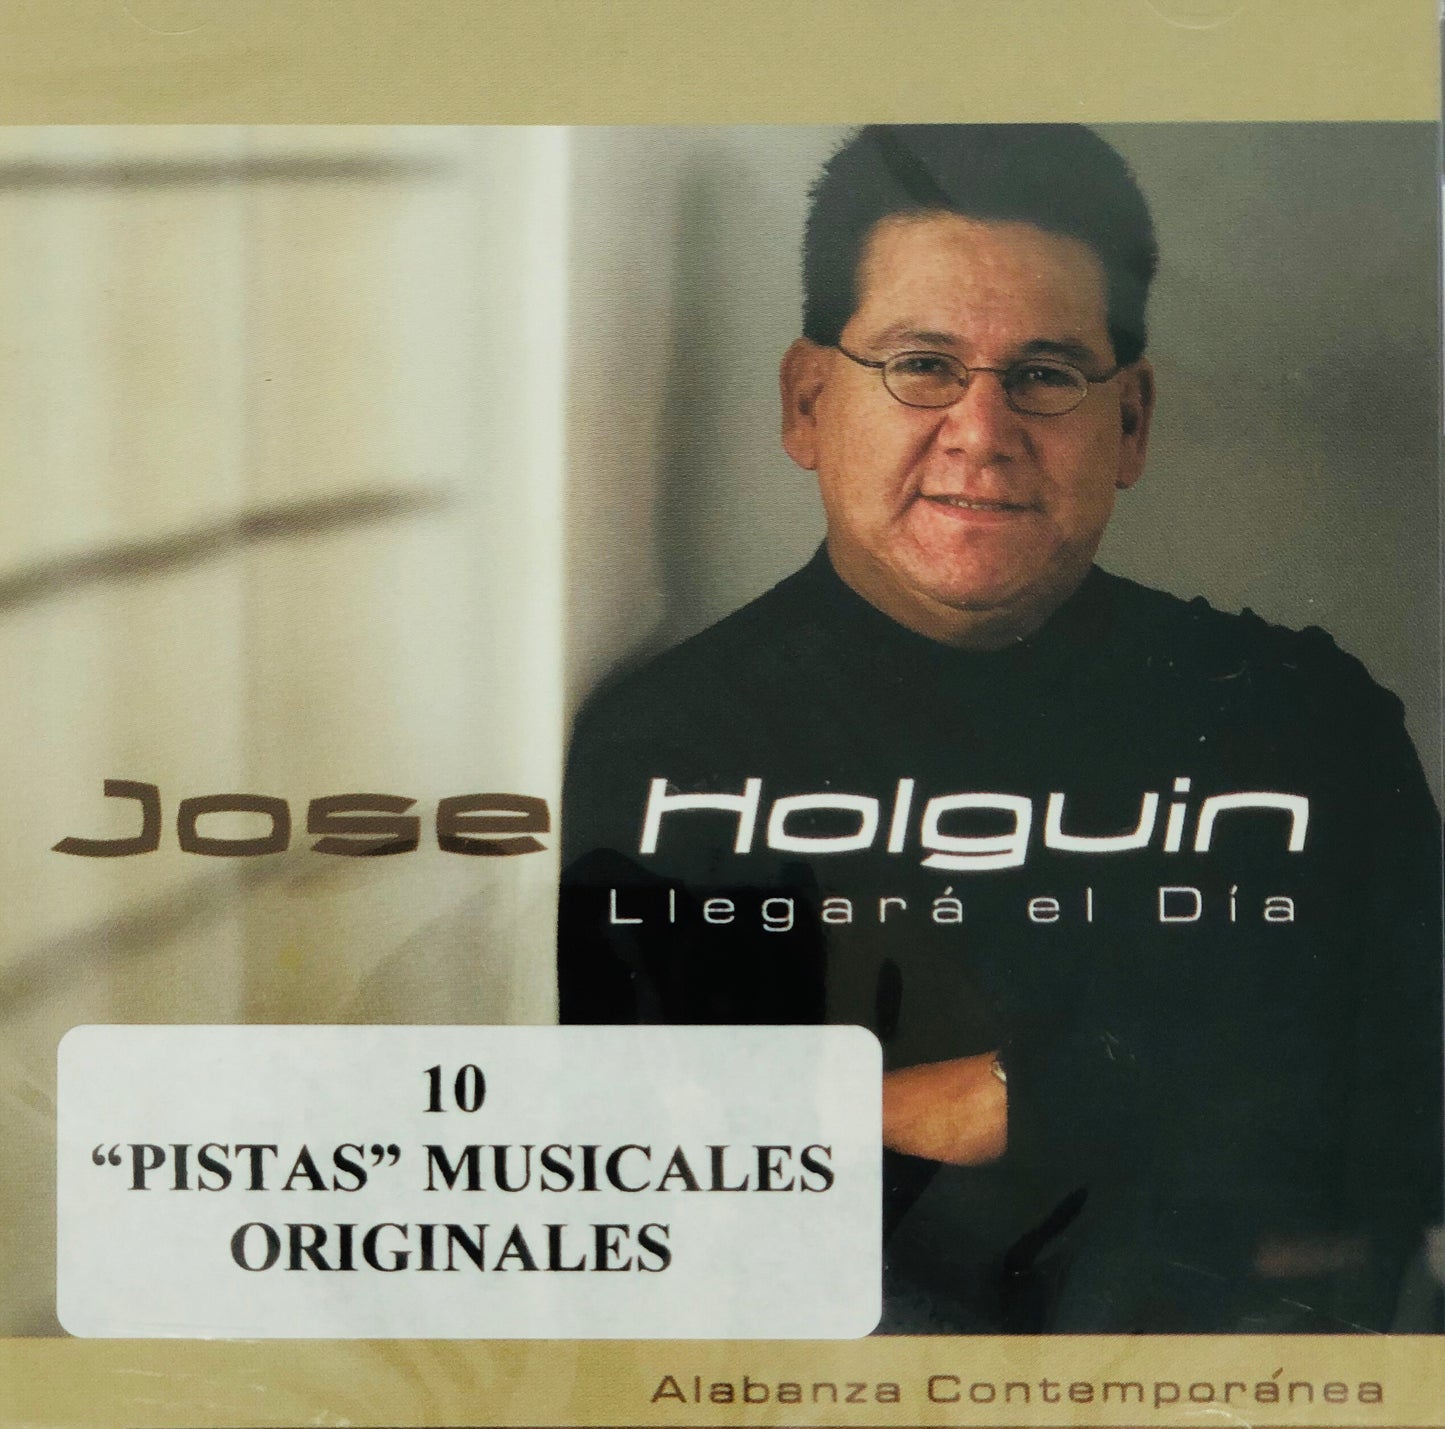 CD Pistas - Llegara el Dia - Jose Holguin